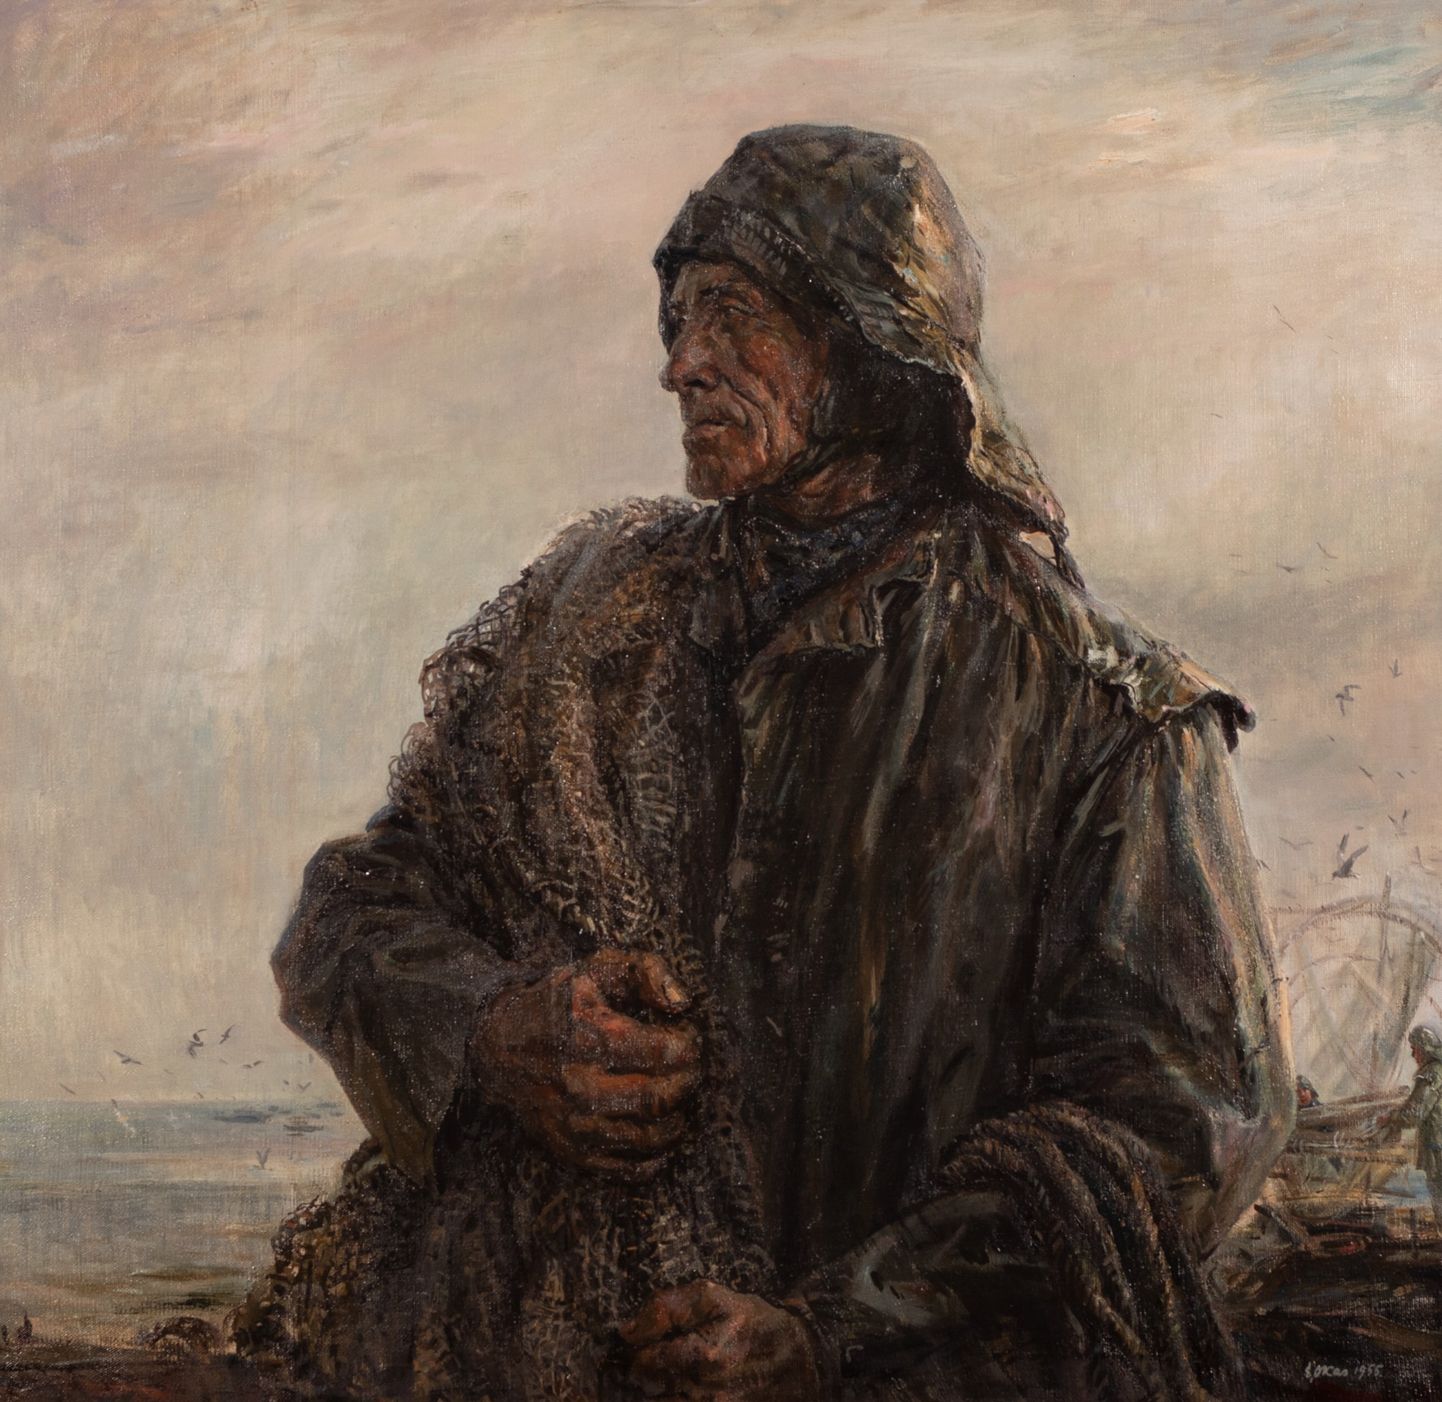 Evald Okase töö "Vana kalur" (1955) müüdi Haus galerii 2021 aasta kevadoksjonil 58 000 euroga.